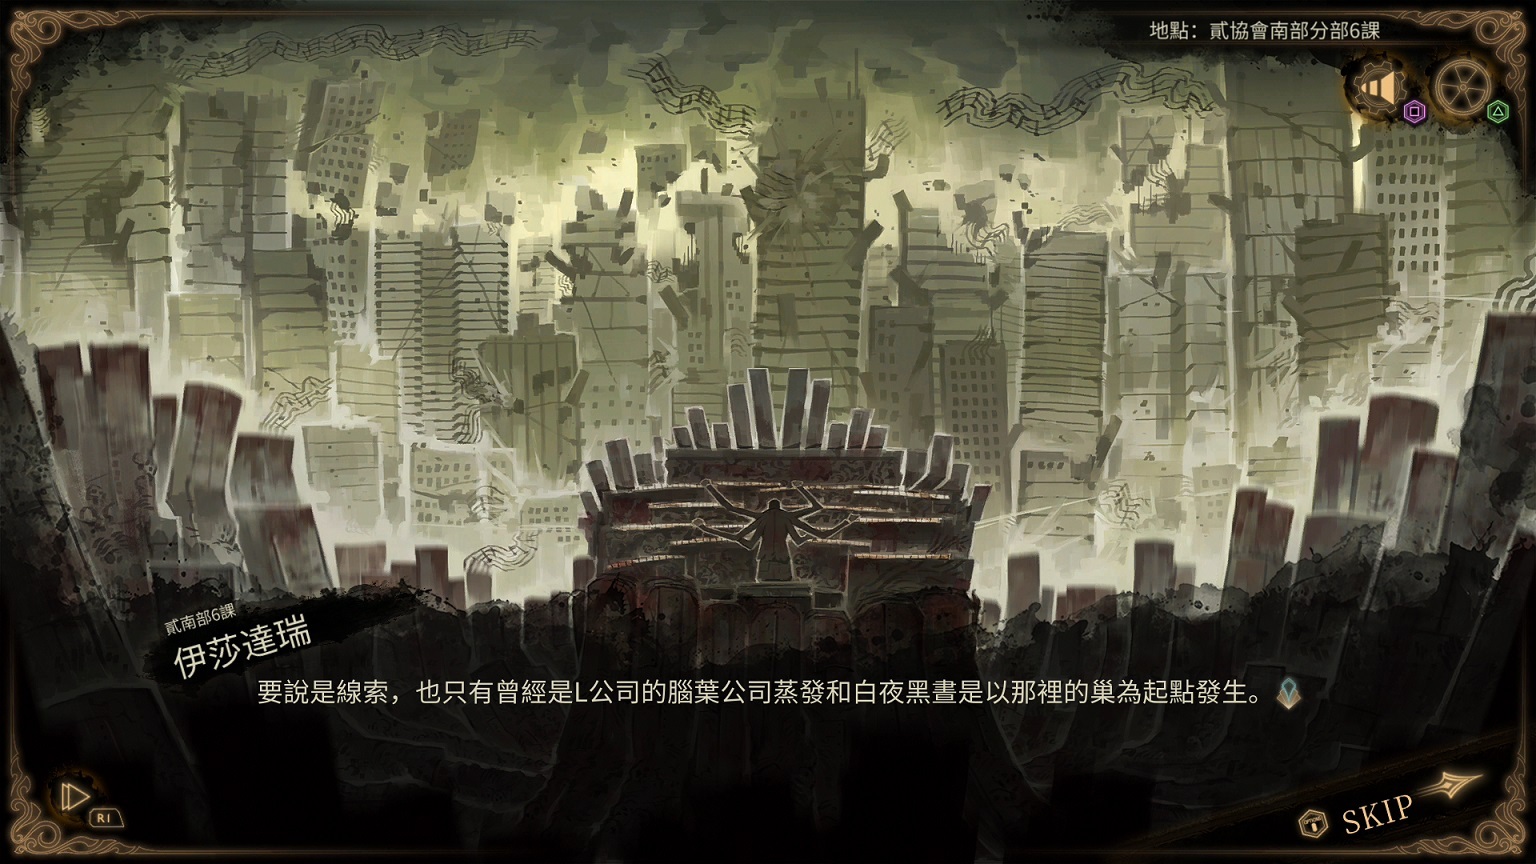 《废墟图书馆》中文版公开宣传前导预告影片 预定 4/25 相约神秘图书馆